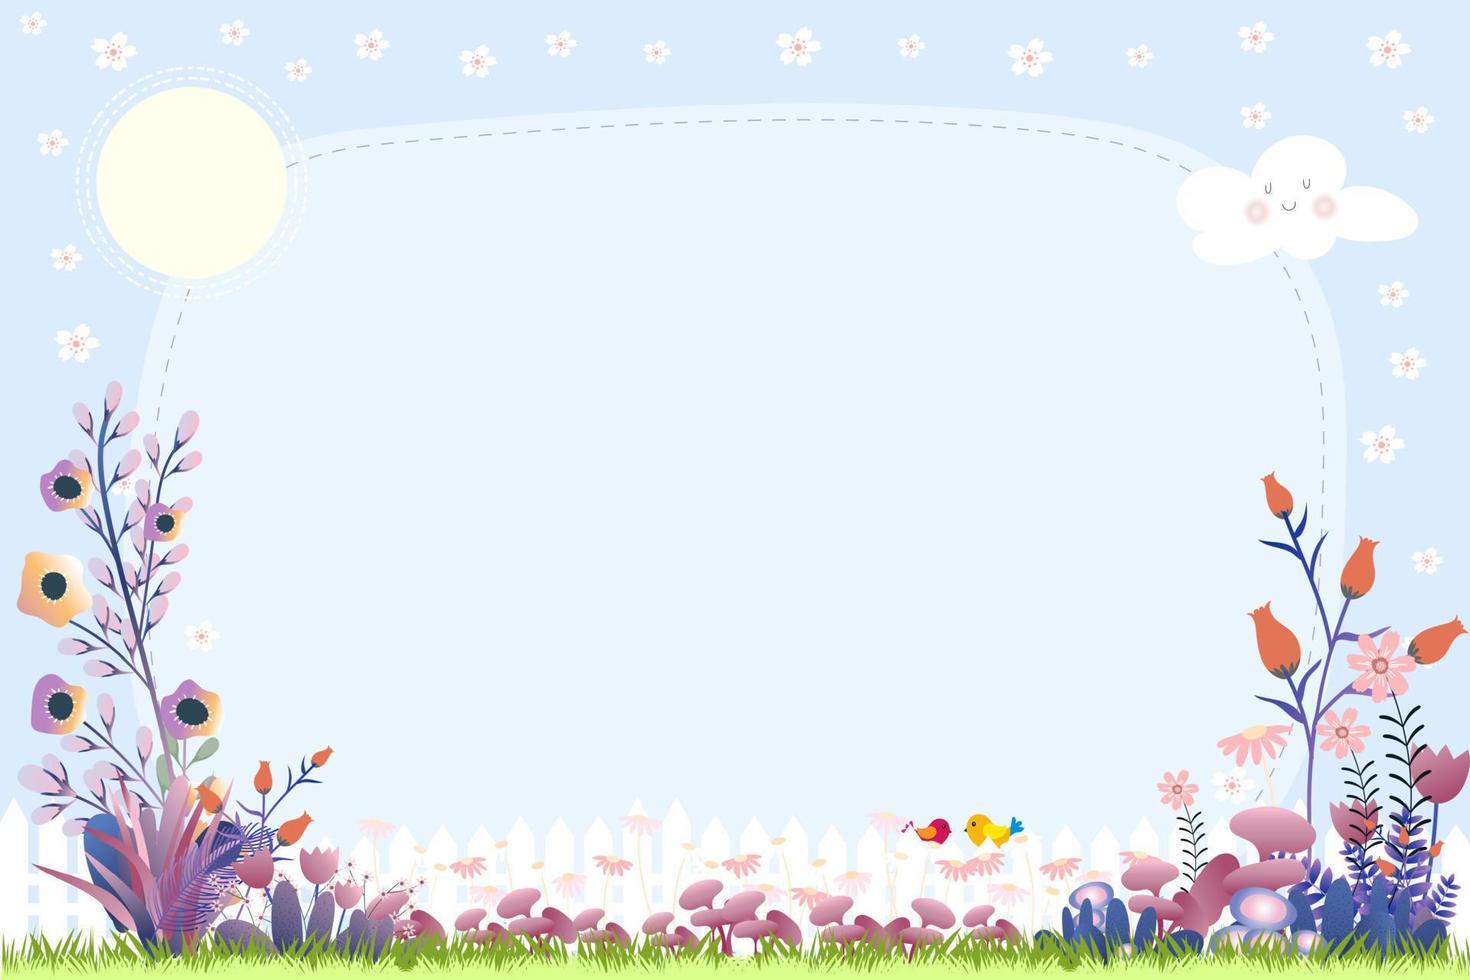 fondo de primavera con flor en el jardín con marco de flor de cerezo en el cielo azul y espacio de copia para texto, banner vectorial linda escena de verano con borde de flores, concepto para tarjeta de felicitación de Pascua vector